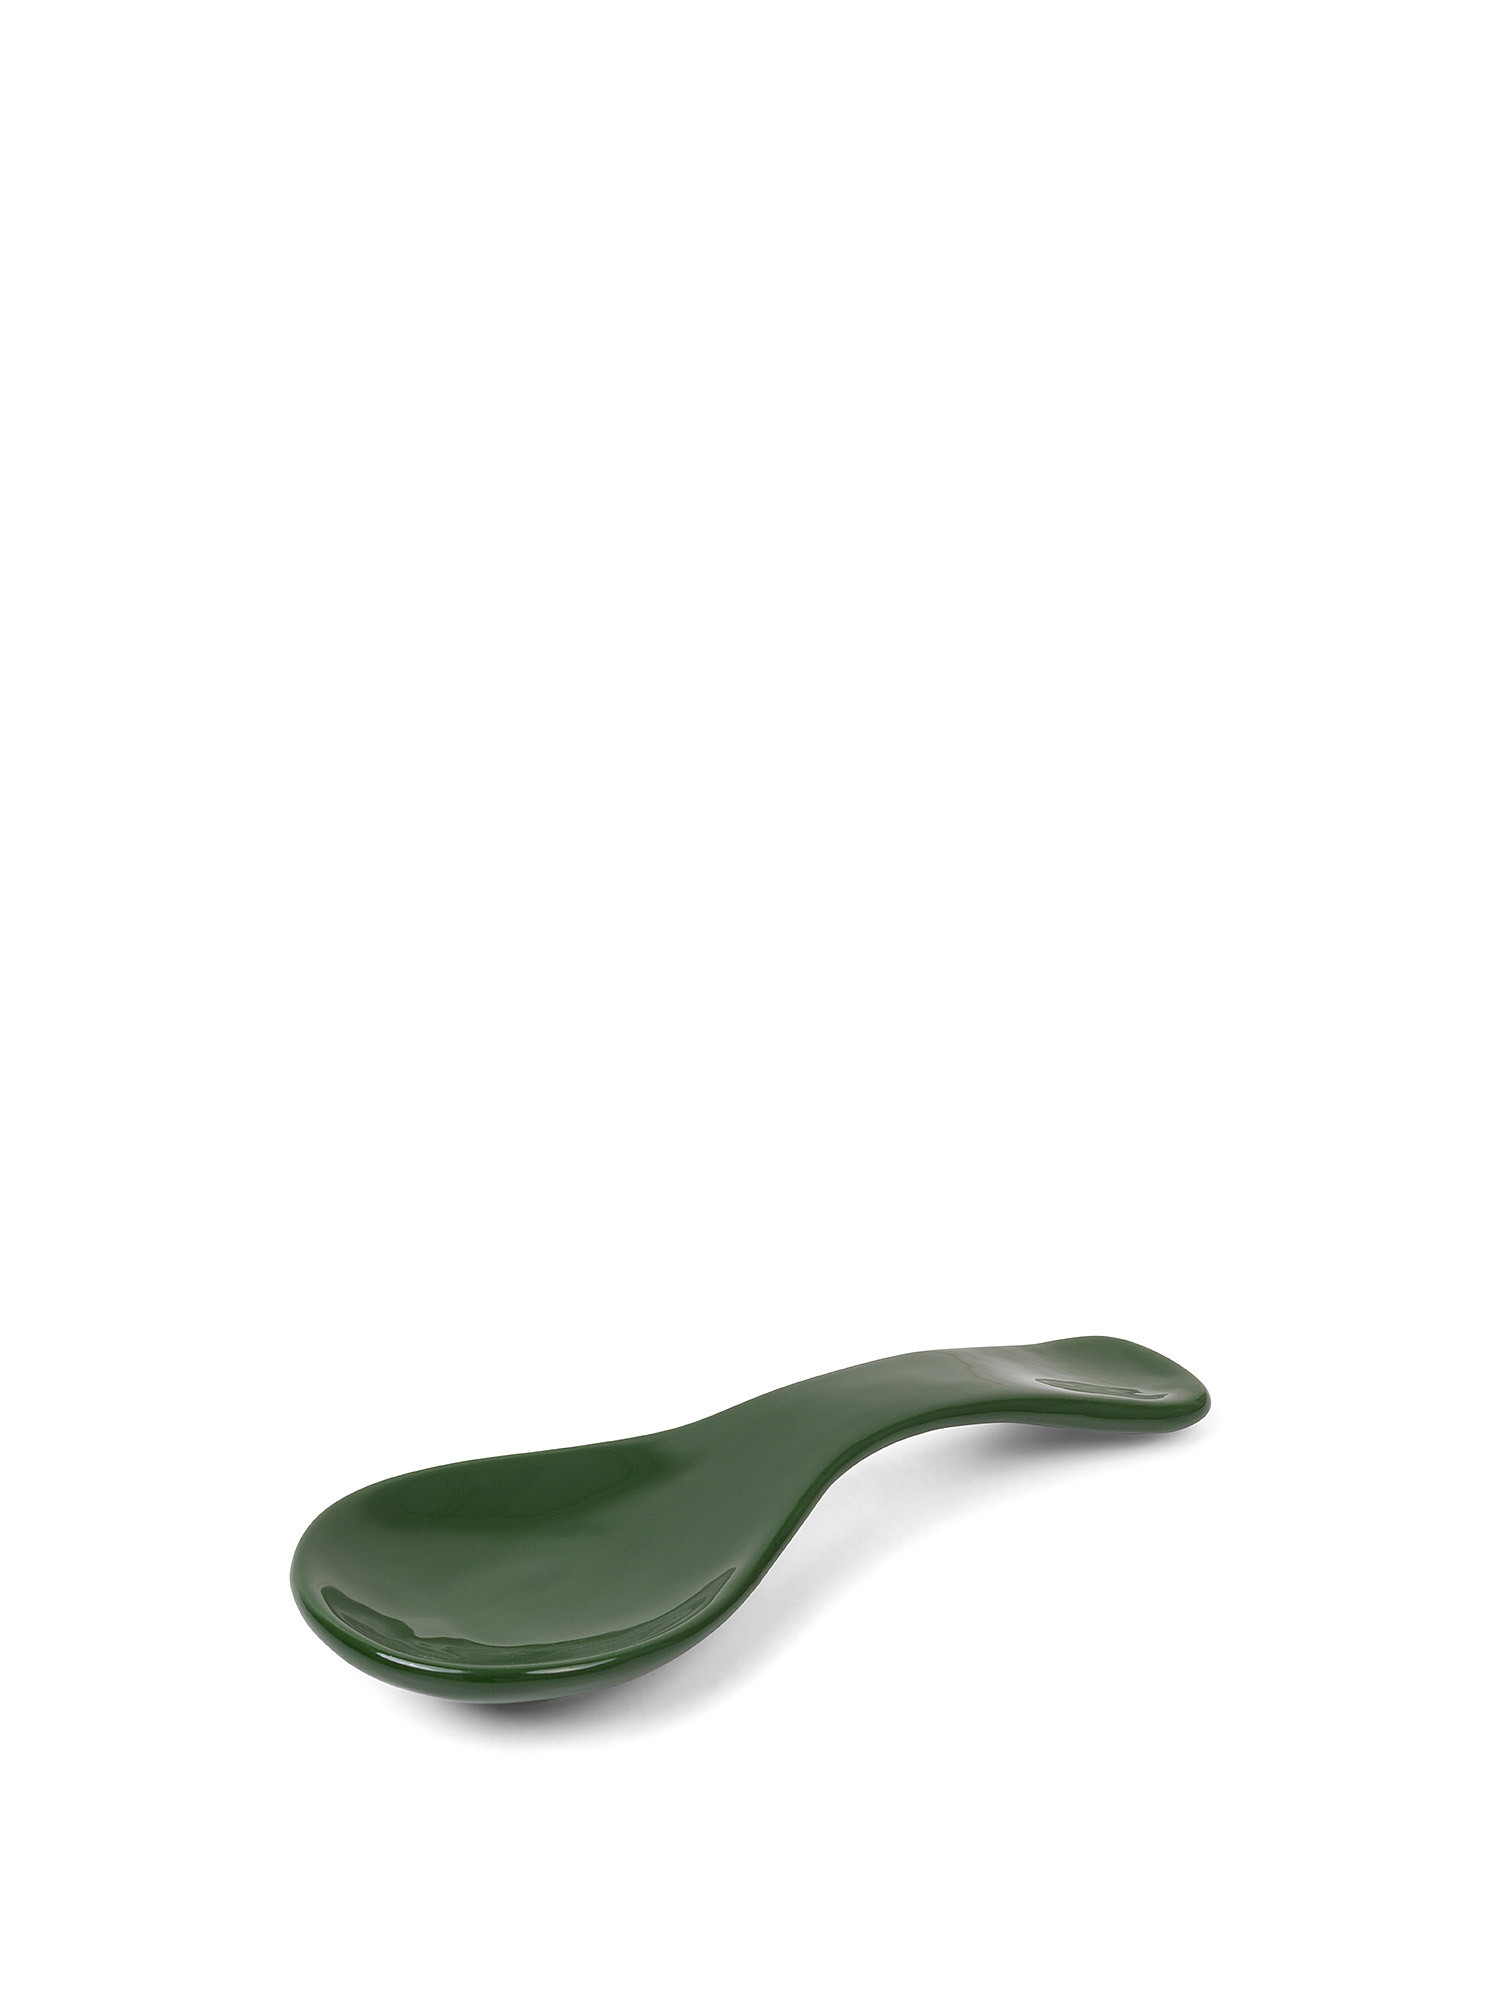 Pepper-shaped ceramic ladle holder, Green, large image number 0